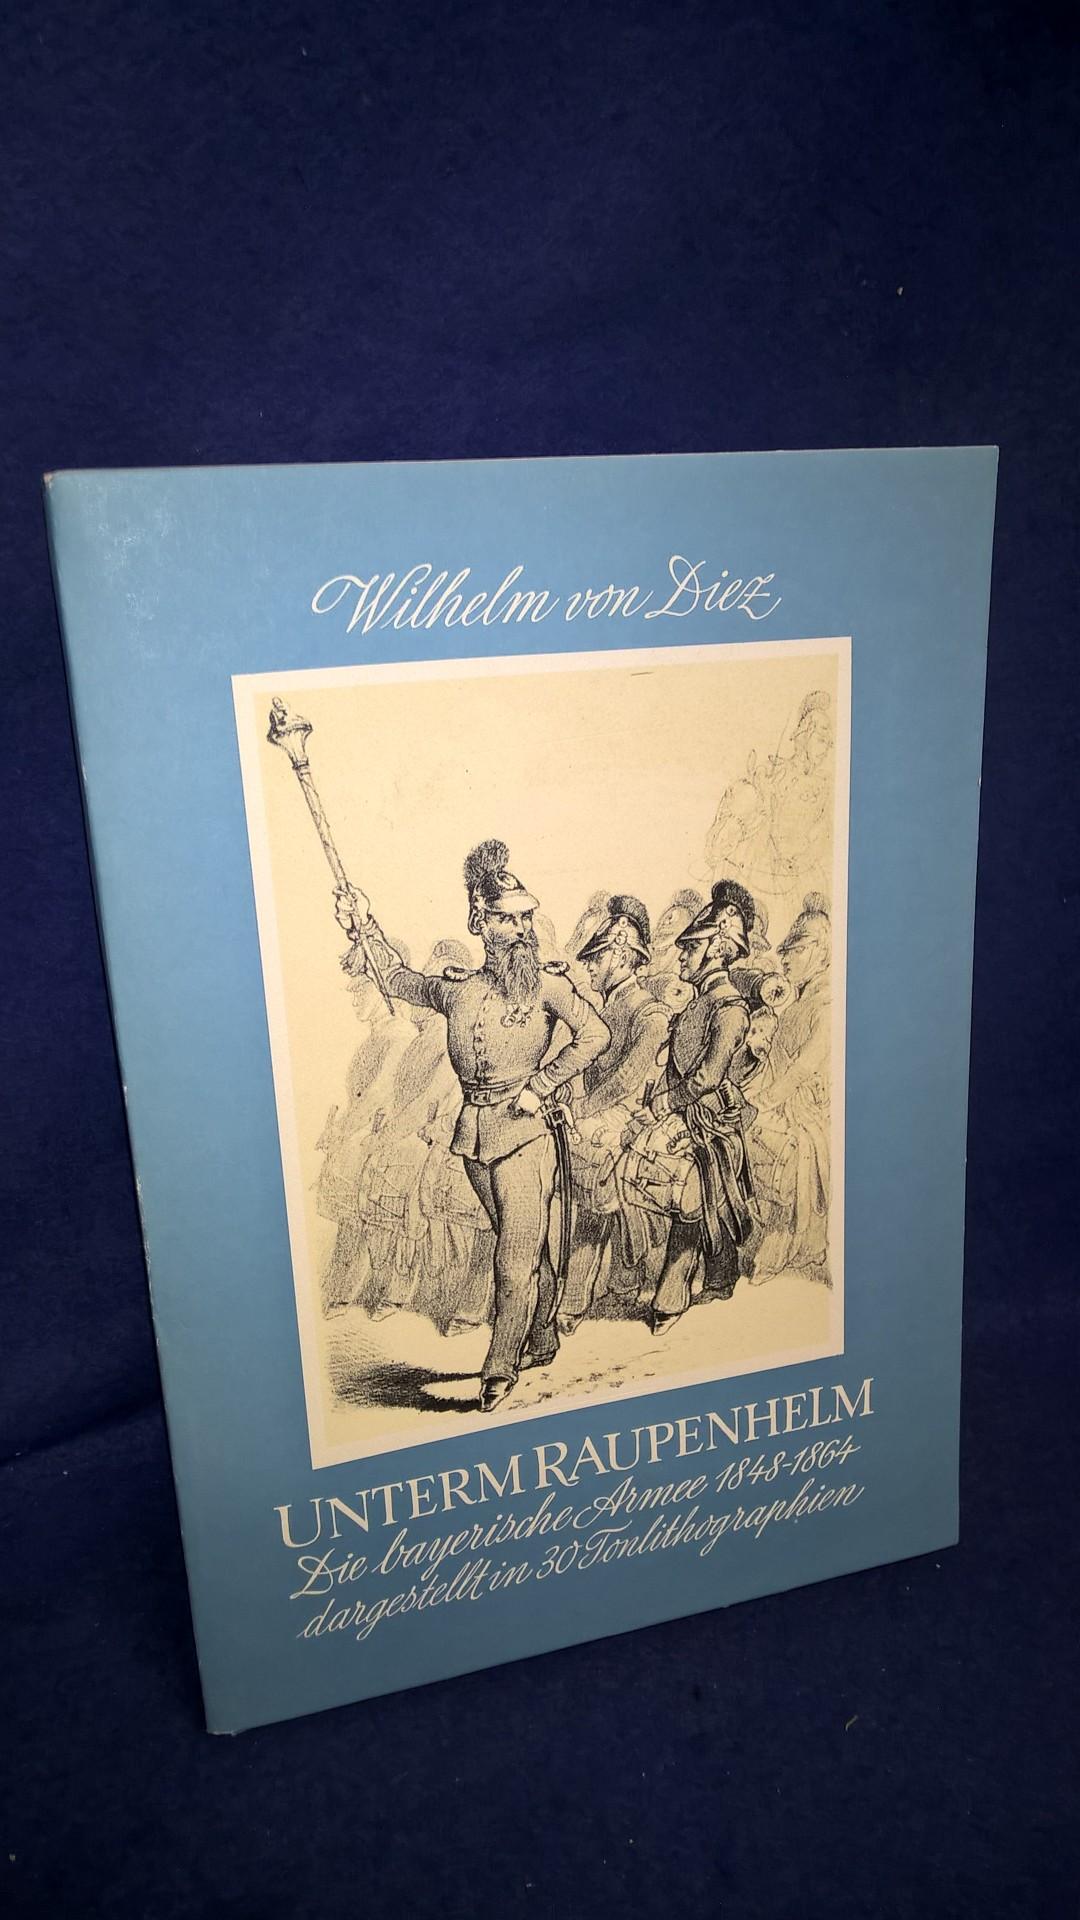 Unterm Raupenhelm. Die Bayerische Armee 1848-1864 dargestellt in 30 Tonlithographien.